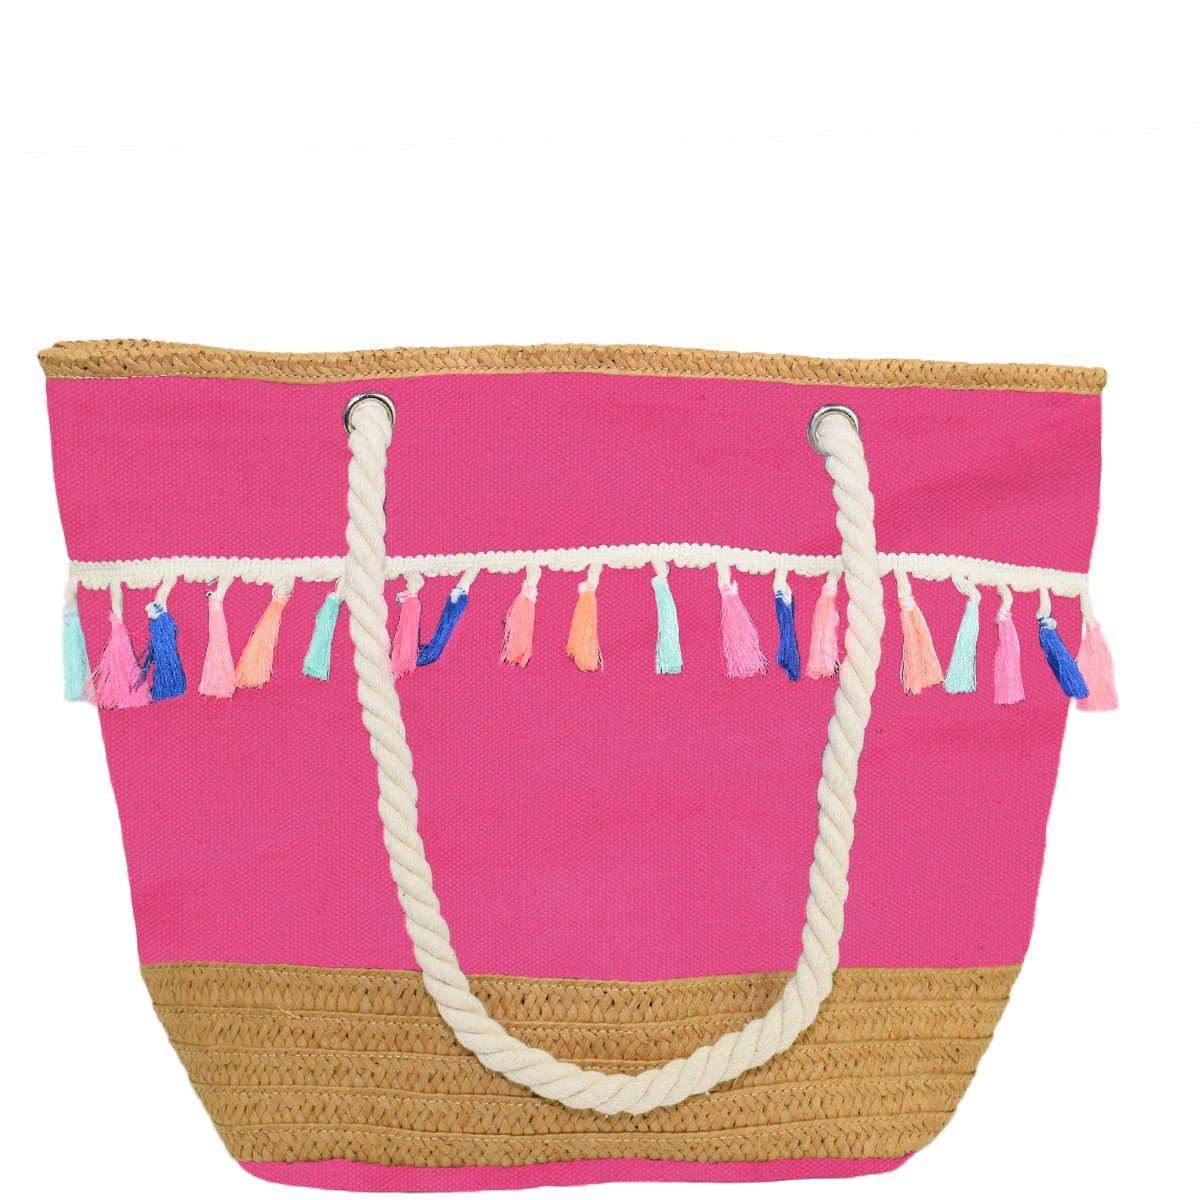 Sonia Originelli Strandtasche Shopper Boho neon Quasten Bommel Bastverzierung Strandtasche, kleine Innentasche mit Reißverschluss pink